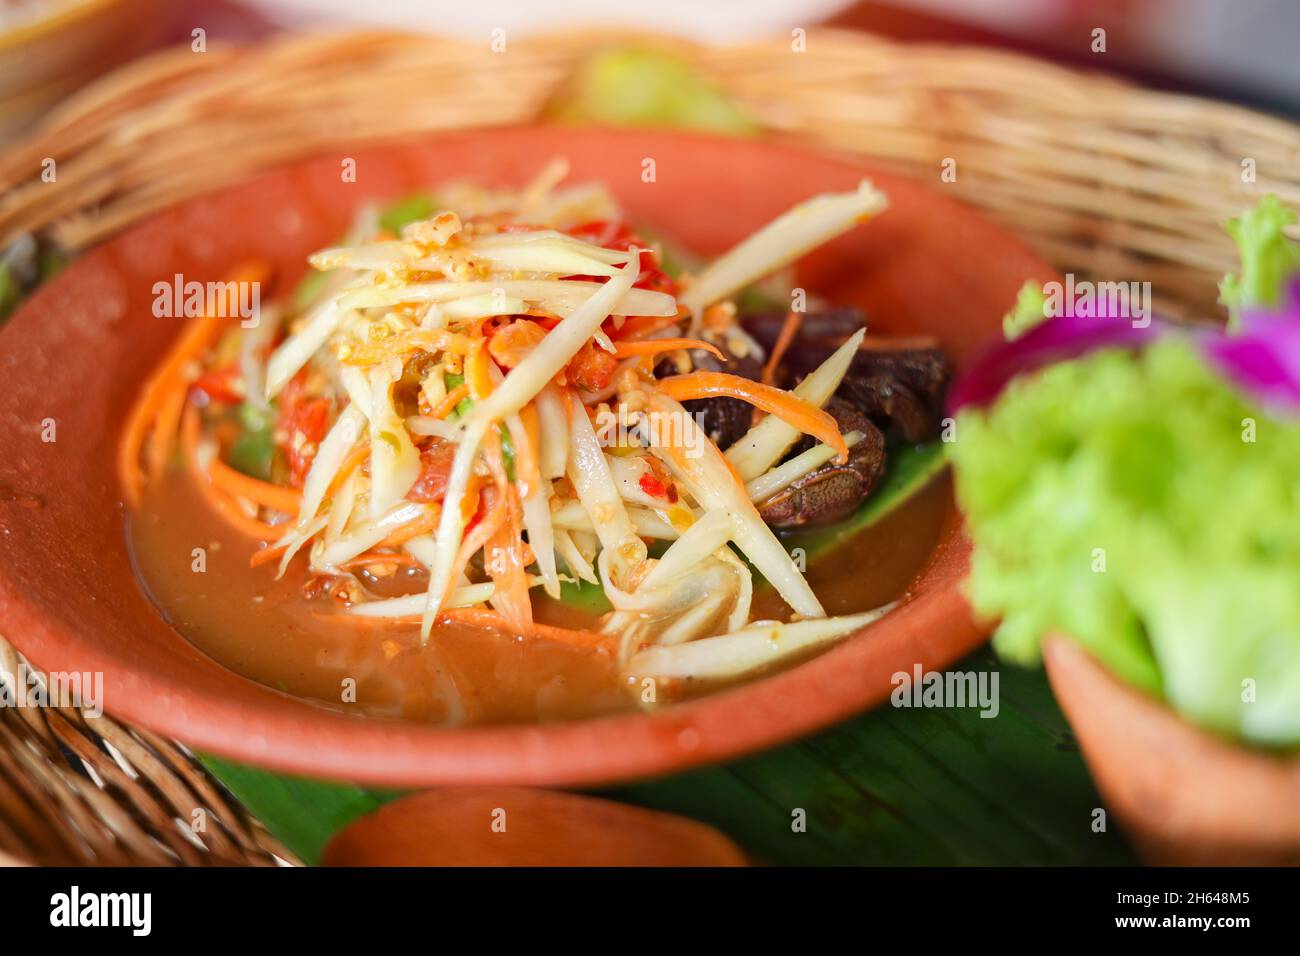 Tailandese Papaya insalata di granchio salato - Som Tum Poo, cibo Tailandese caldo e piccante delizioso sano e a basso contenuto di grassi Foto Stock